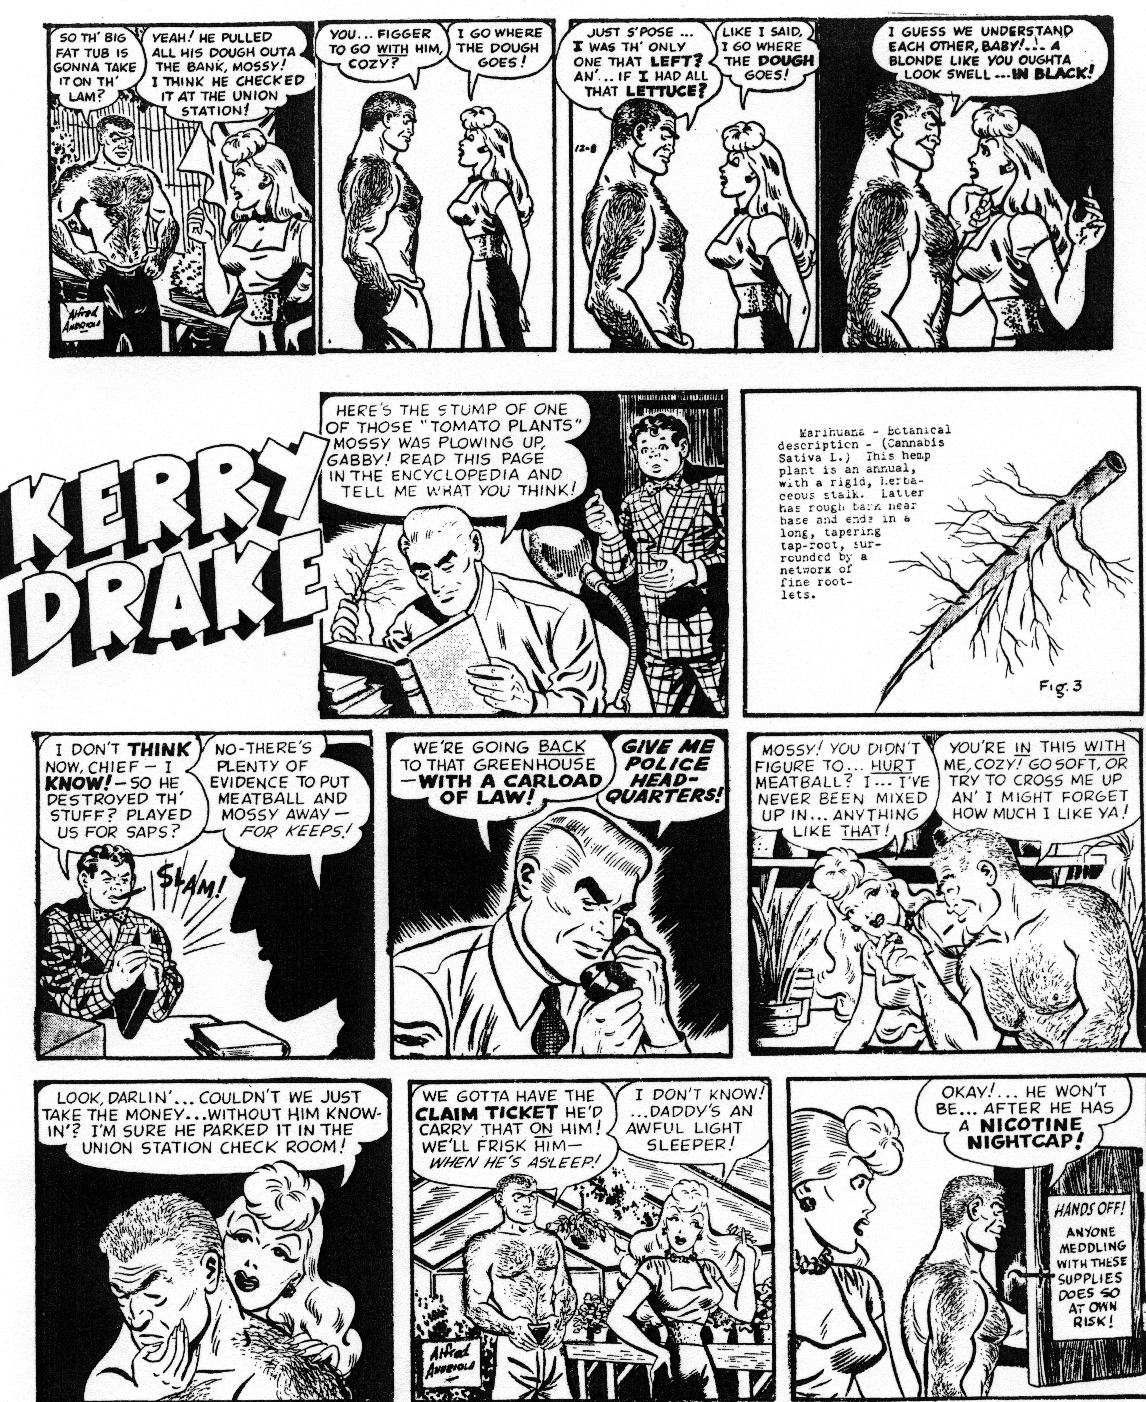 Kerry Drake, 1946 Anti-Drug Story